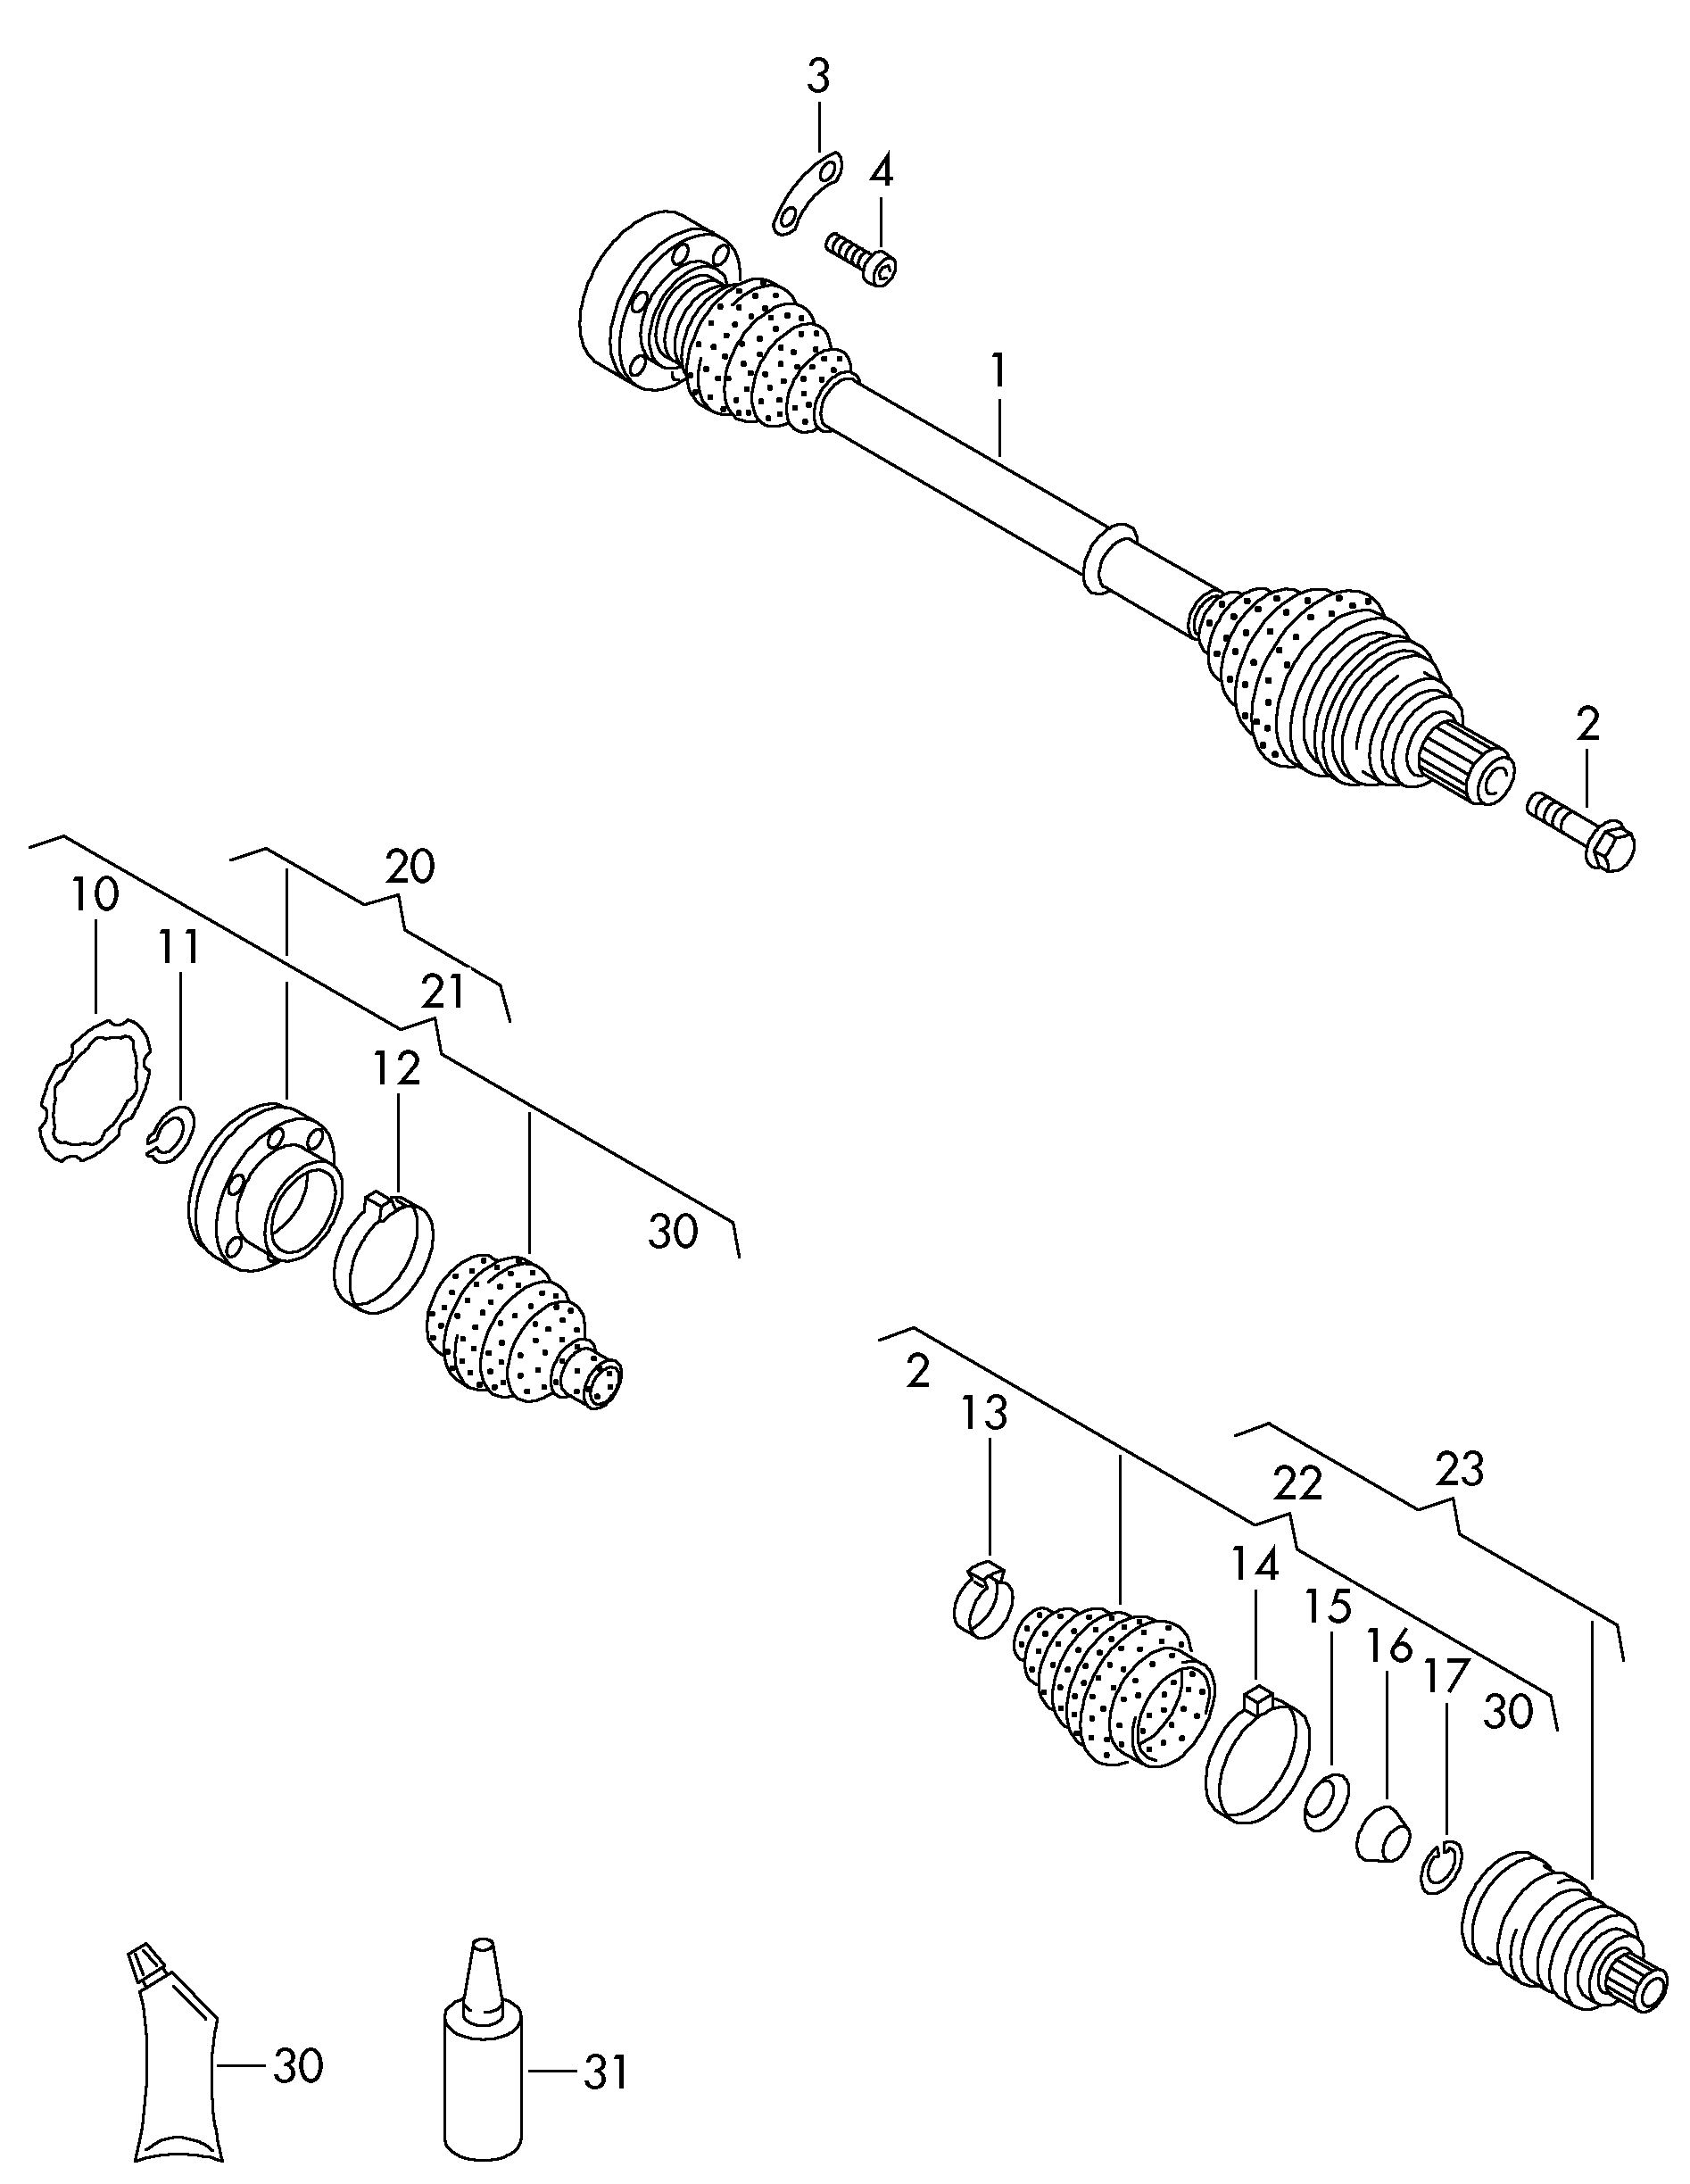 Junta articulada delantero - Transporter syncro - trsy